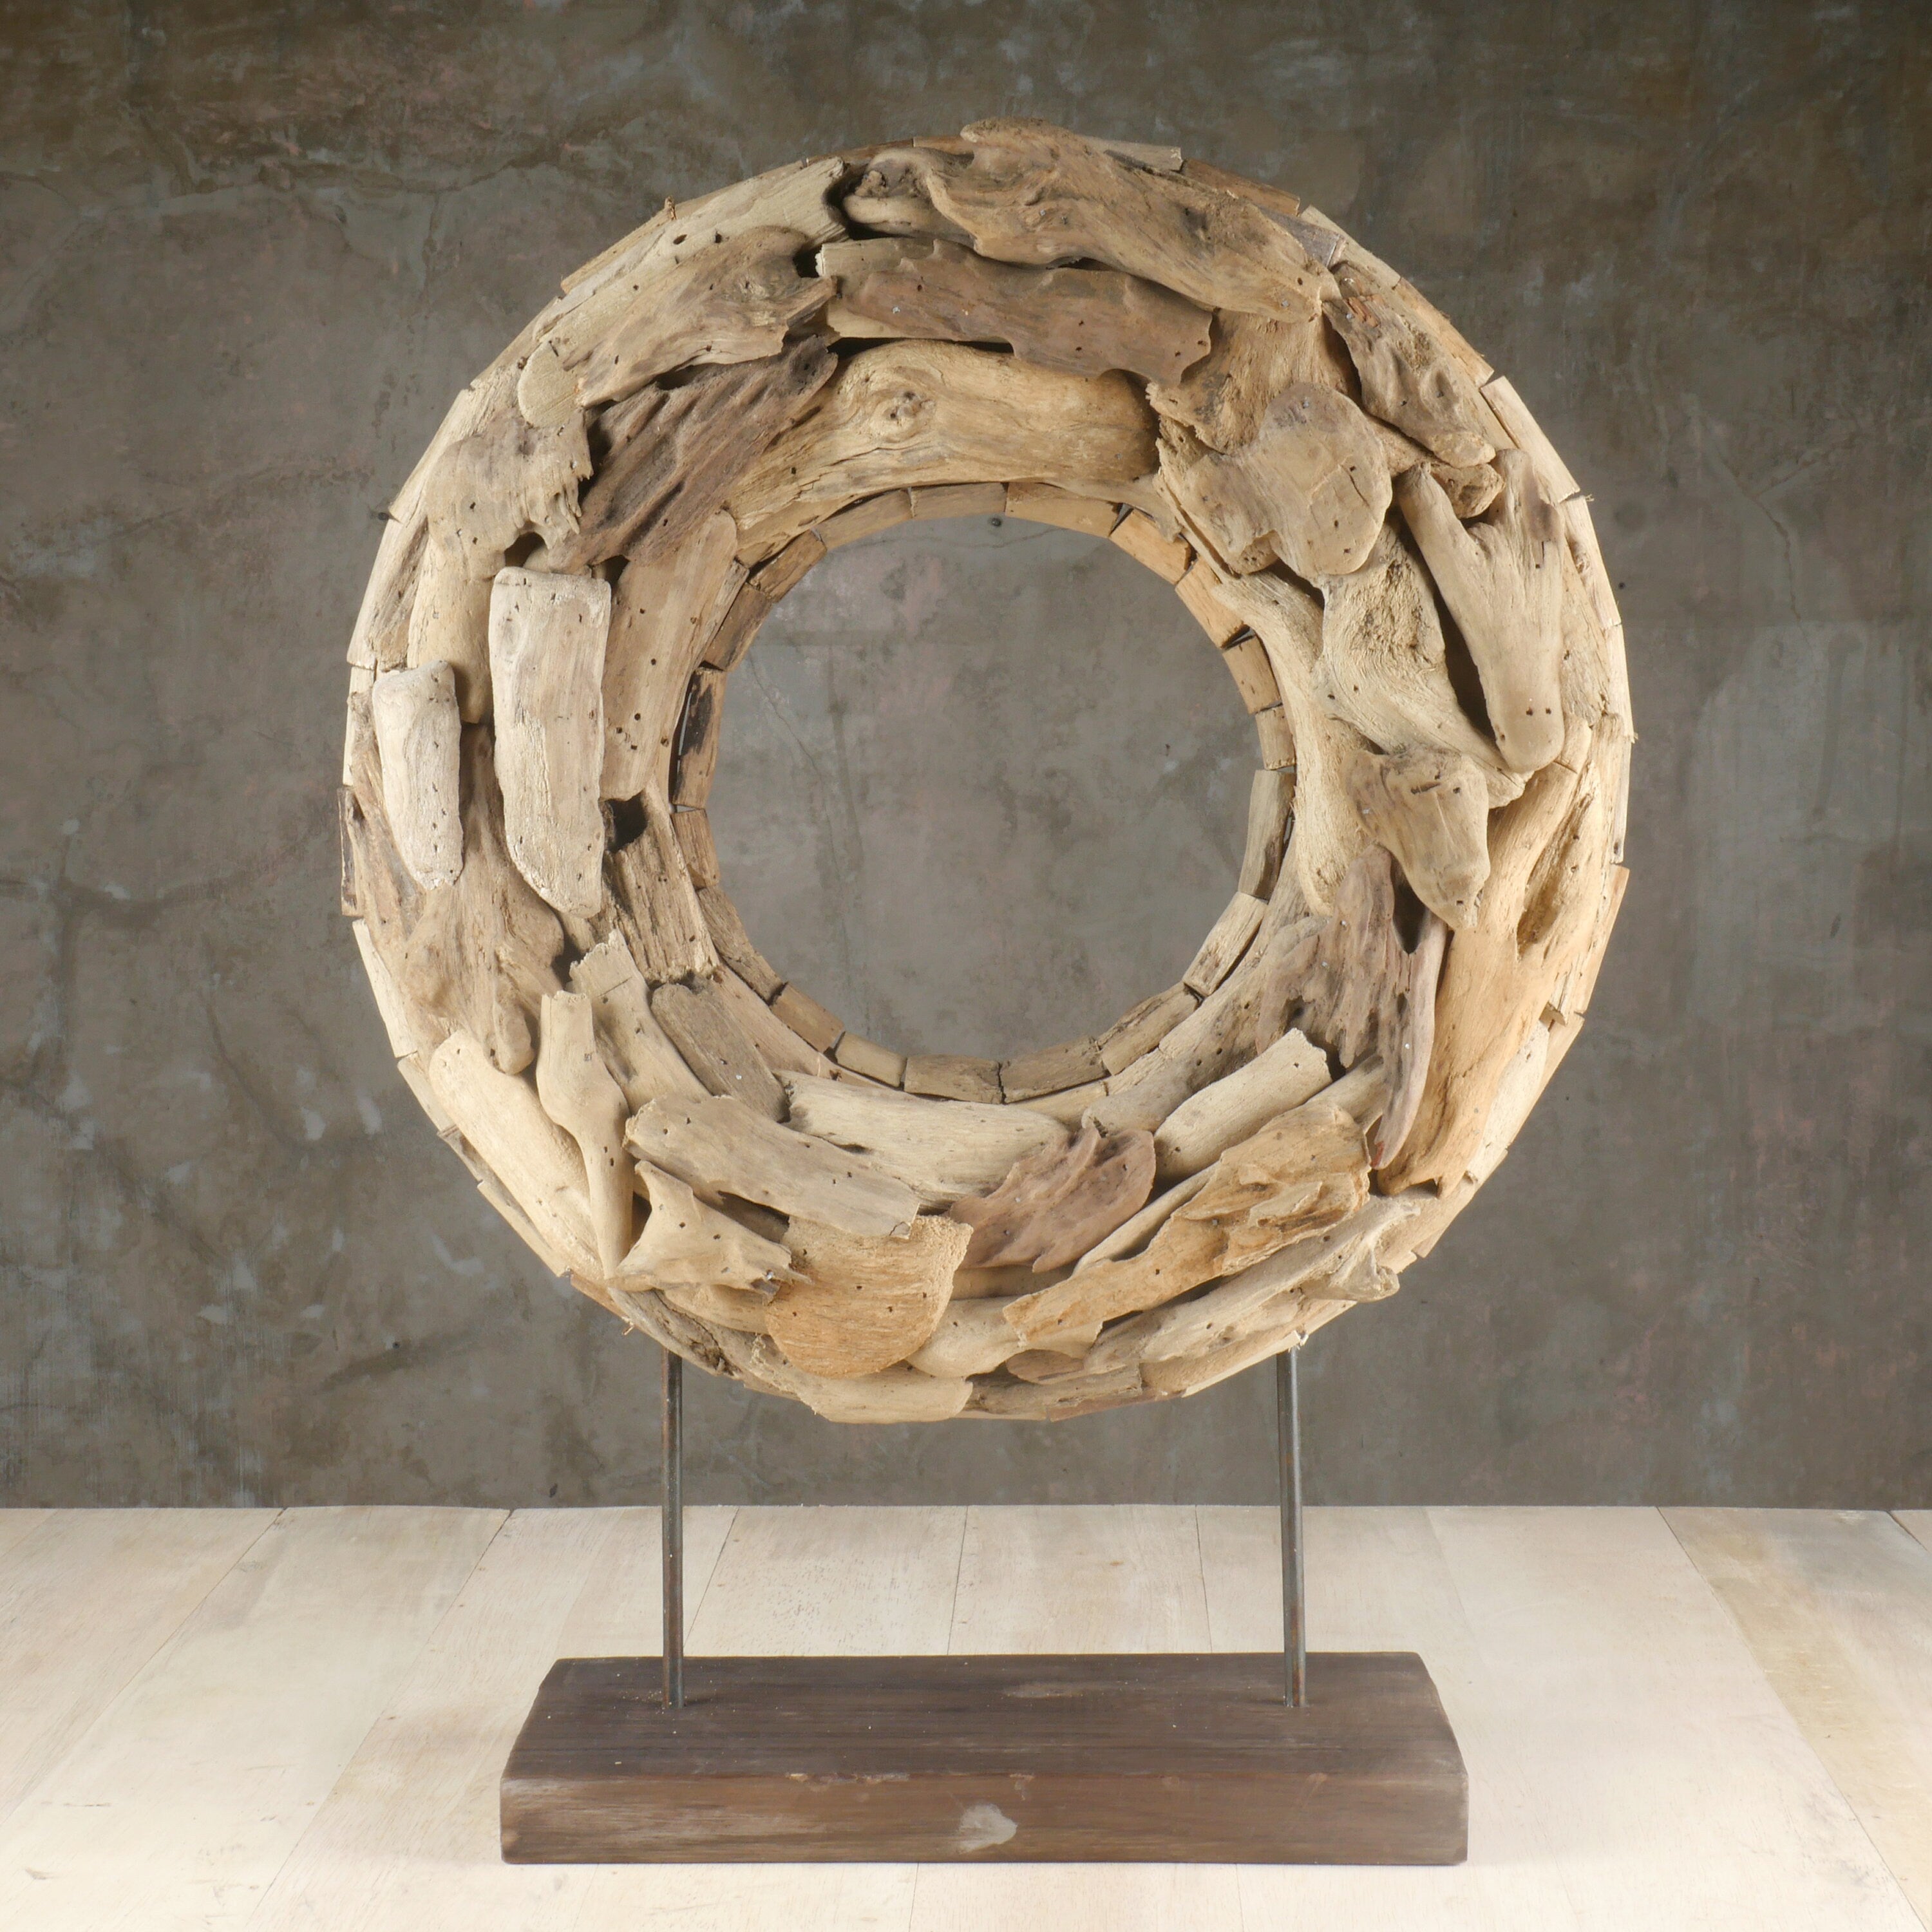 The Driftwood Donut - Driftwood Art Sculpture - Tabletop Driftwood Decor - Contemporary Driftwood Circle Sculpture